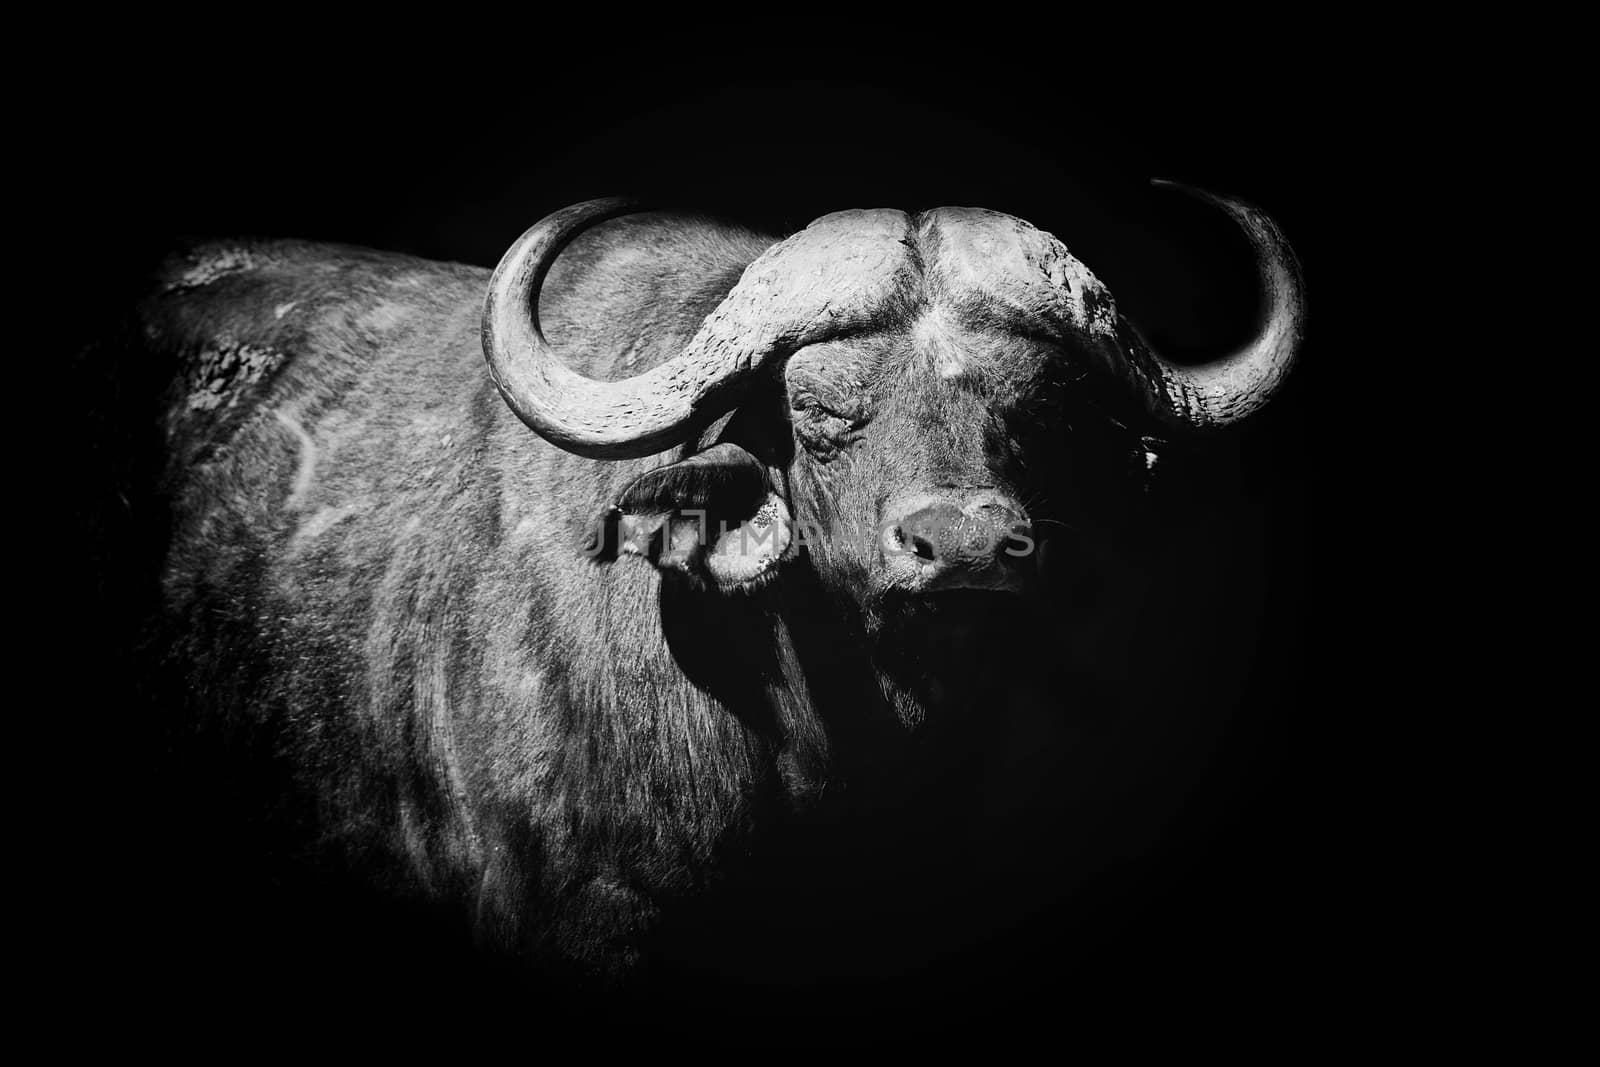 Buffalo on dark background. Black and white image